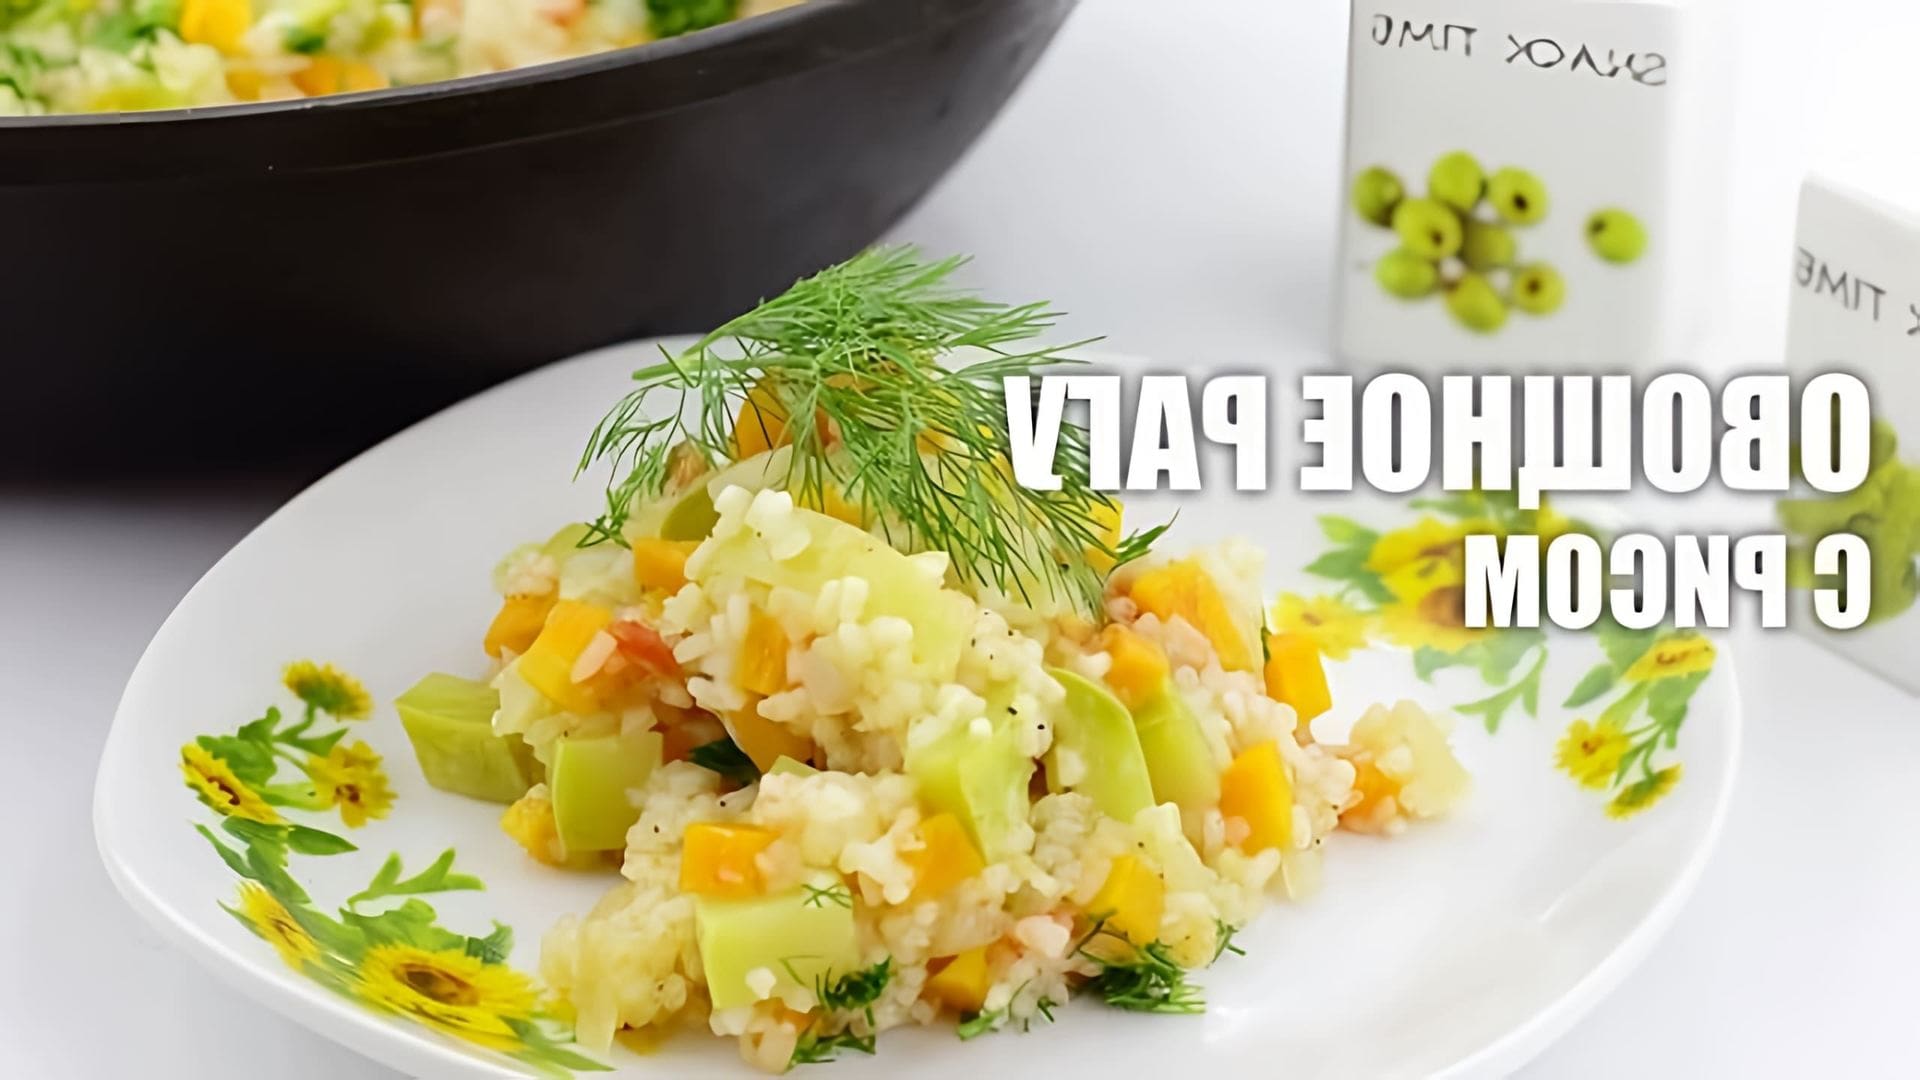 В данном видео демонстрируется рецепт приготовления овощного рагу с рисом